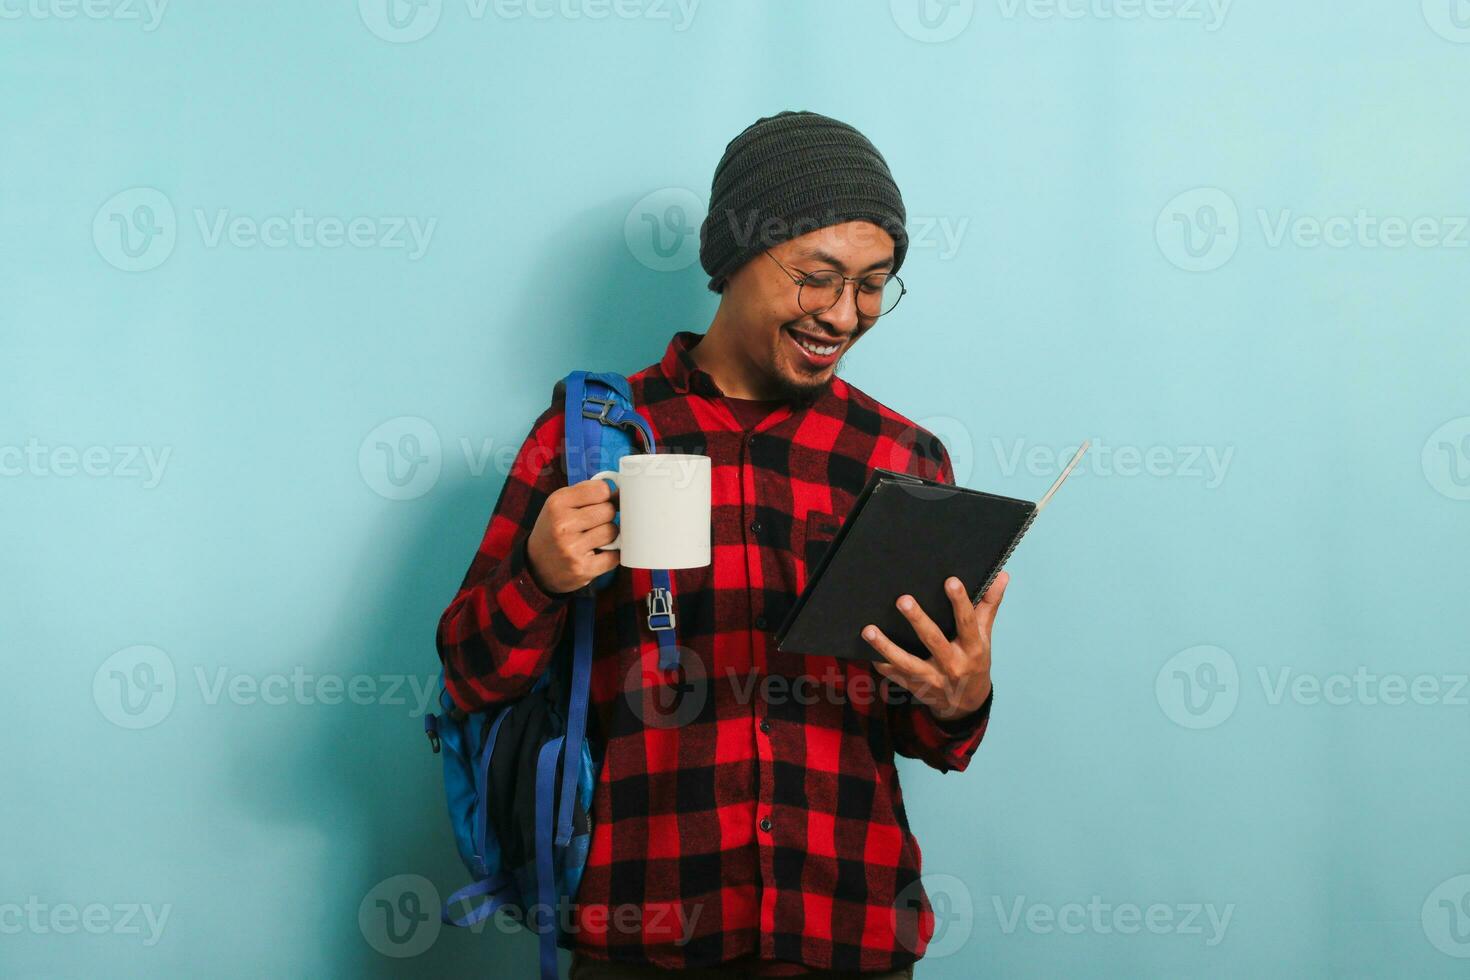 ein jung asiatisch männlich Schüler mit ein Mütze Hut und ein rot Plaid Flanell Shirt, tragen ein Rucksack und Brille, nimmt ein Kaffee brechen nach Vorträge während Stehen gegen ein Blau Hintergrund foto